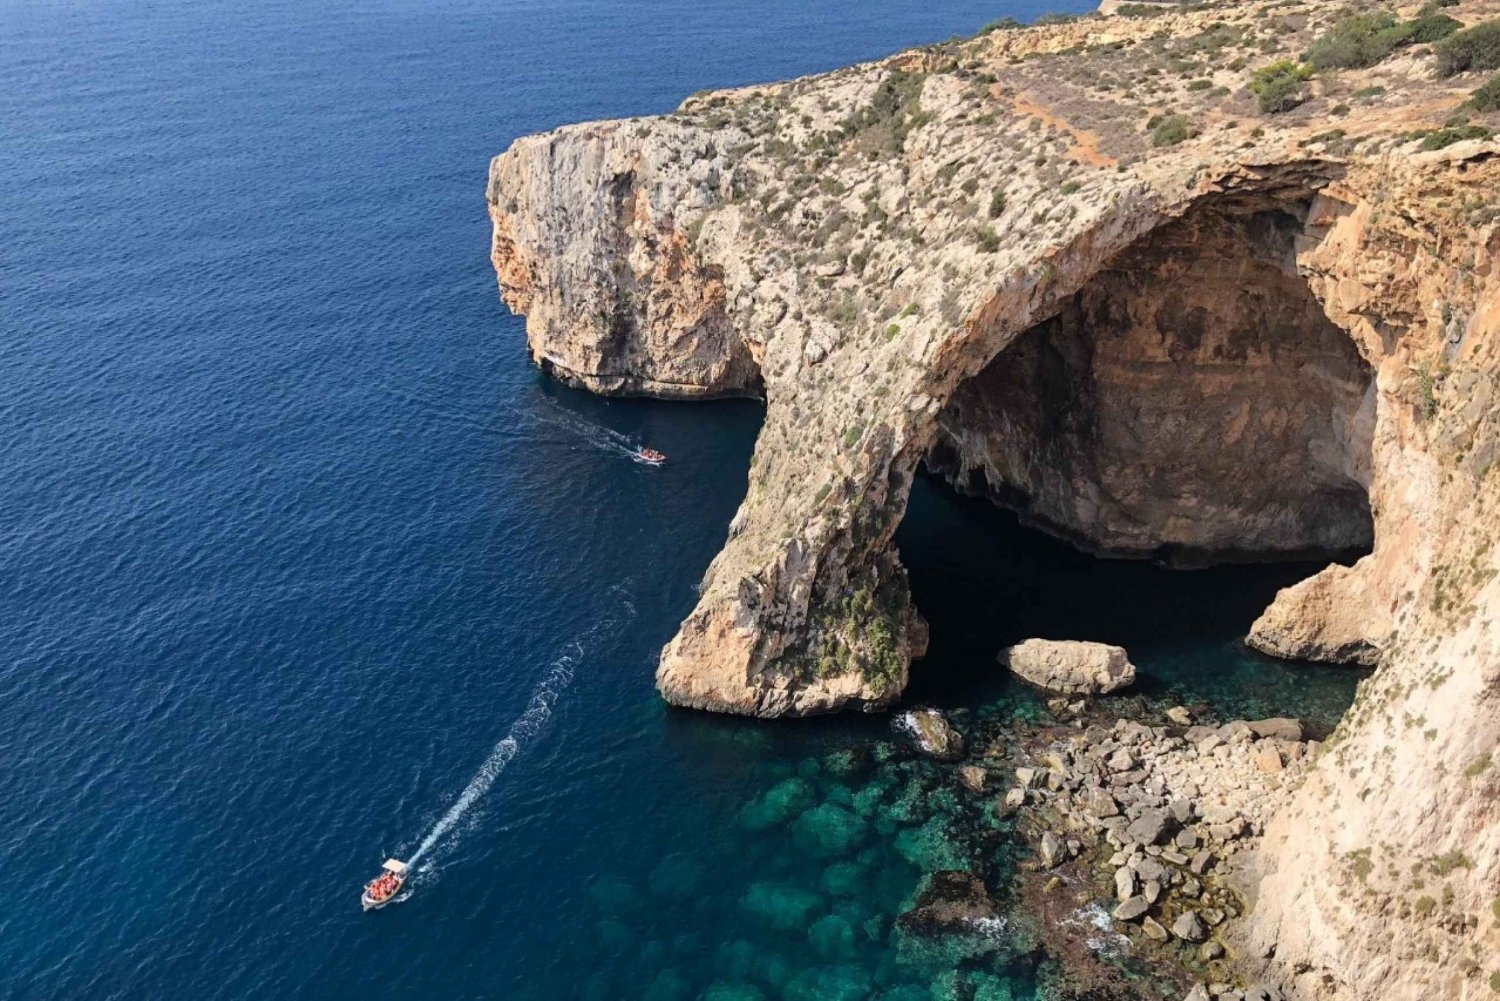 Malta Discount Card : jusqu'à 50% de réduction dans toute l'île de Malte et Gozo